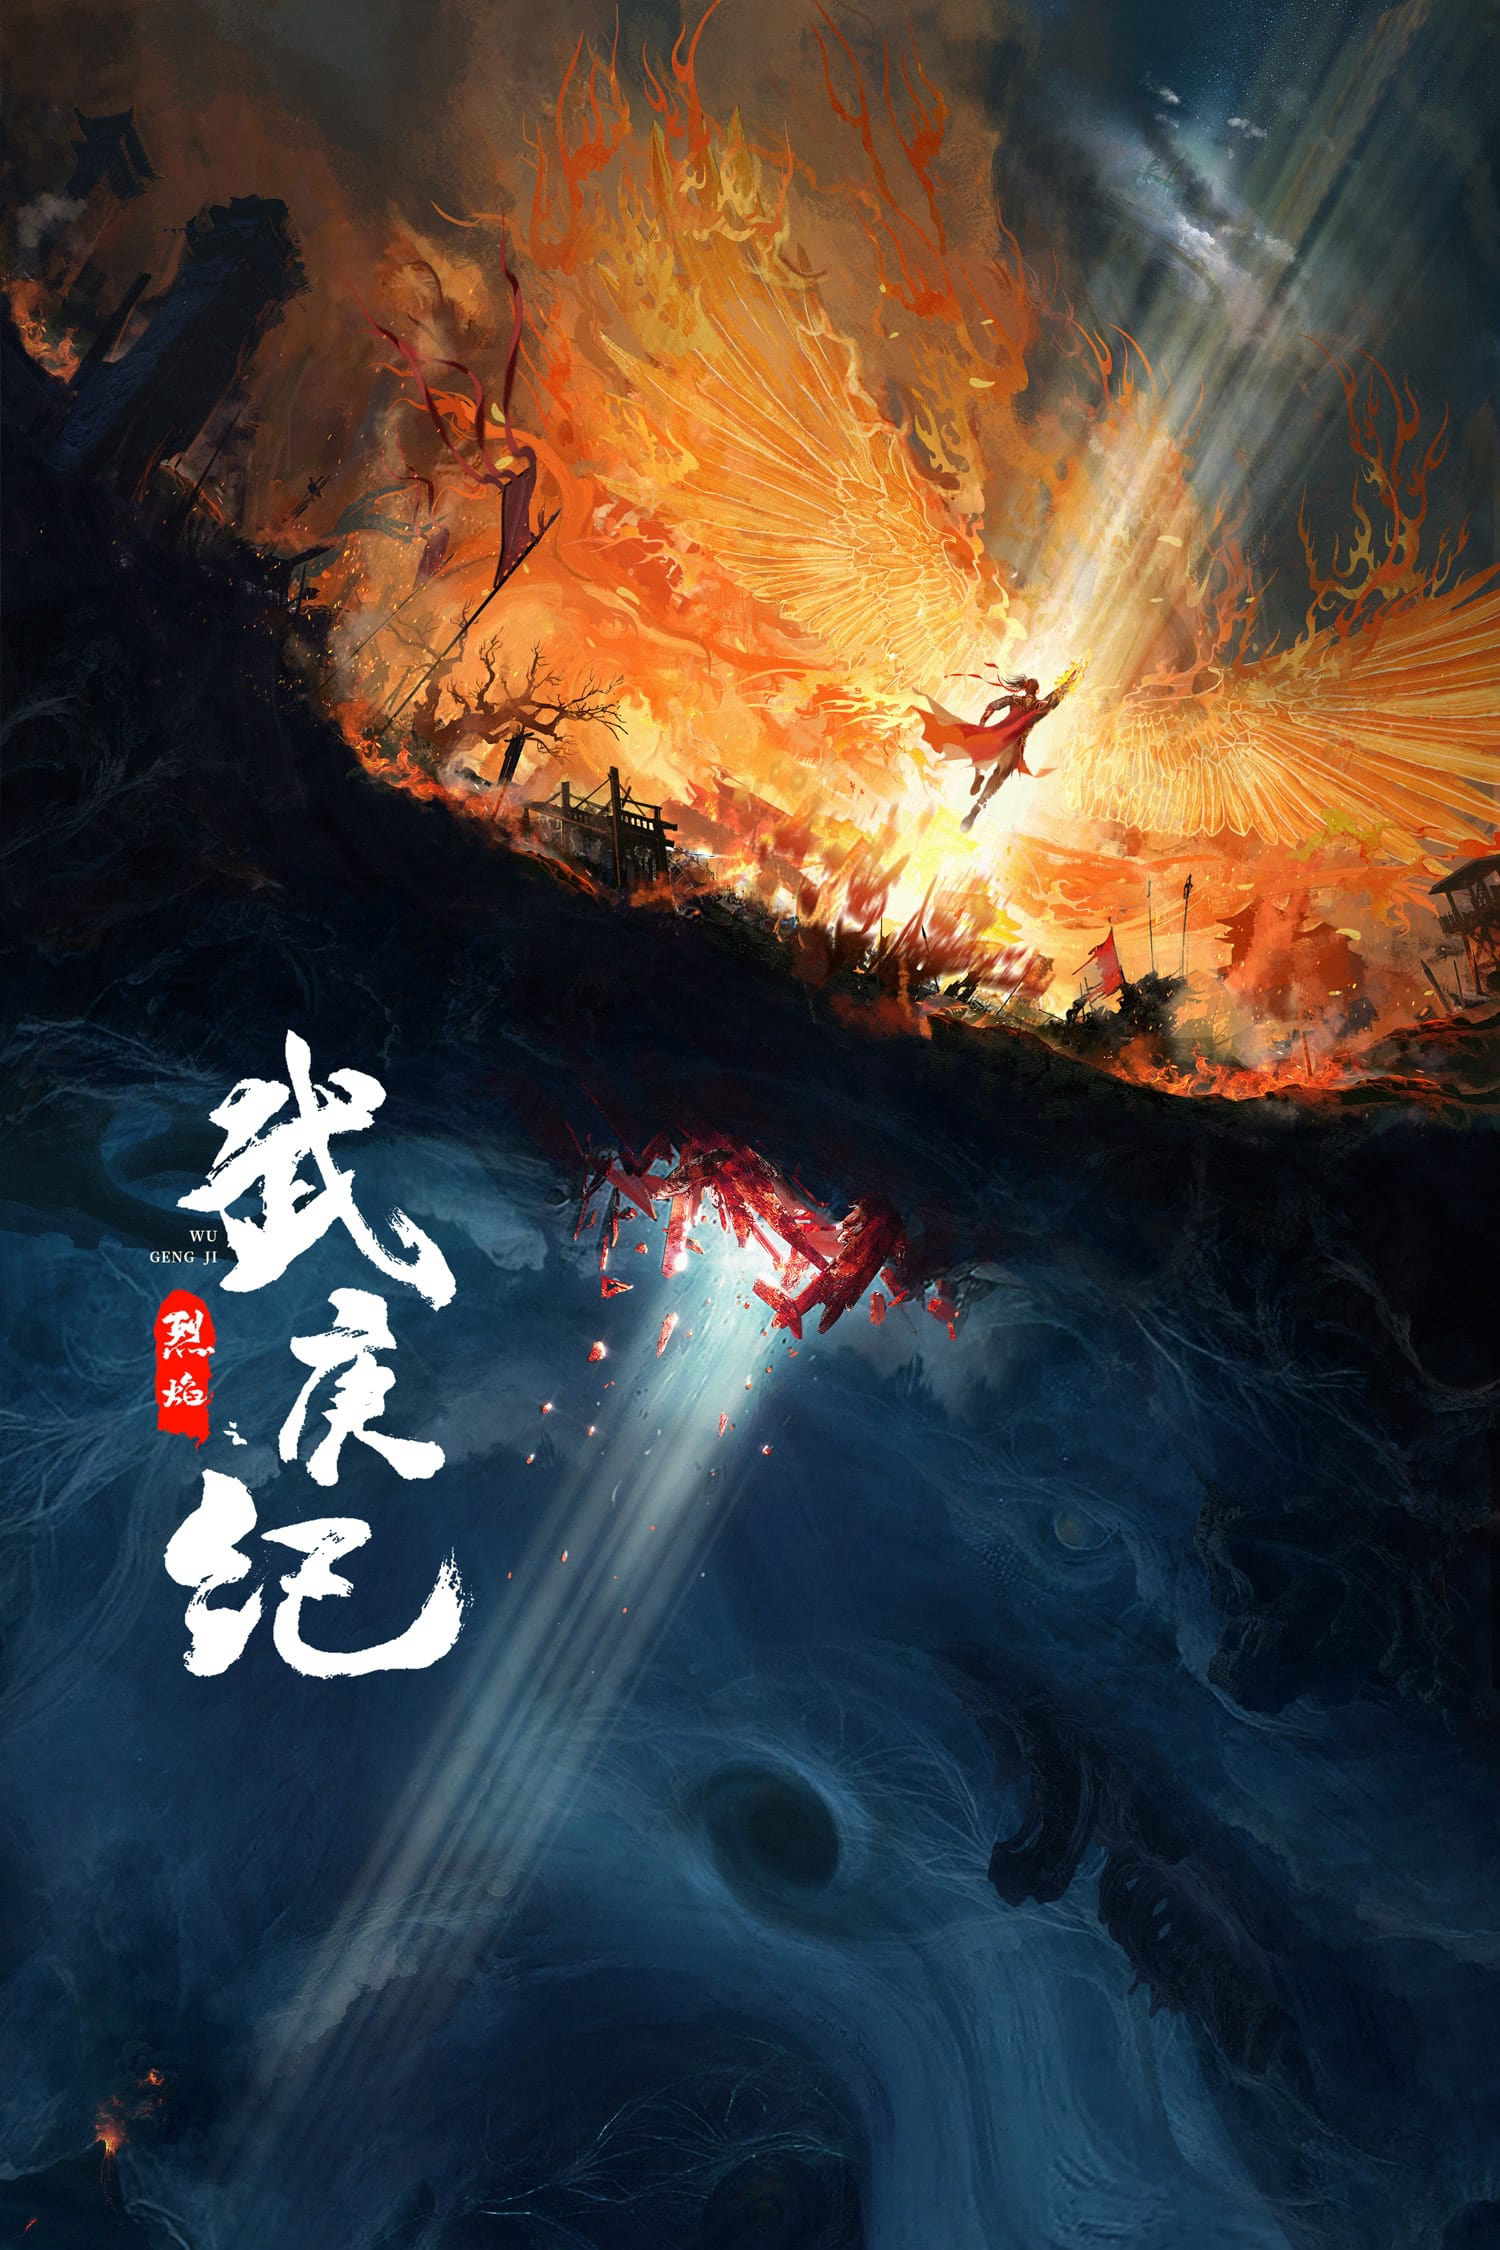 Poster Phim Liệt Diễm (Burning Flames)